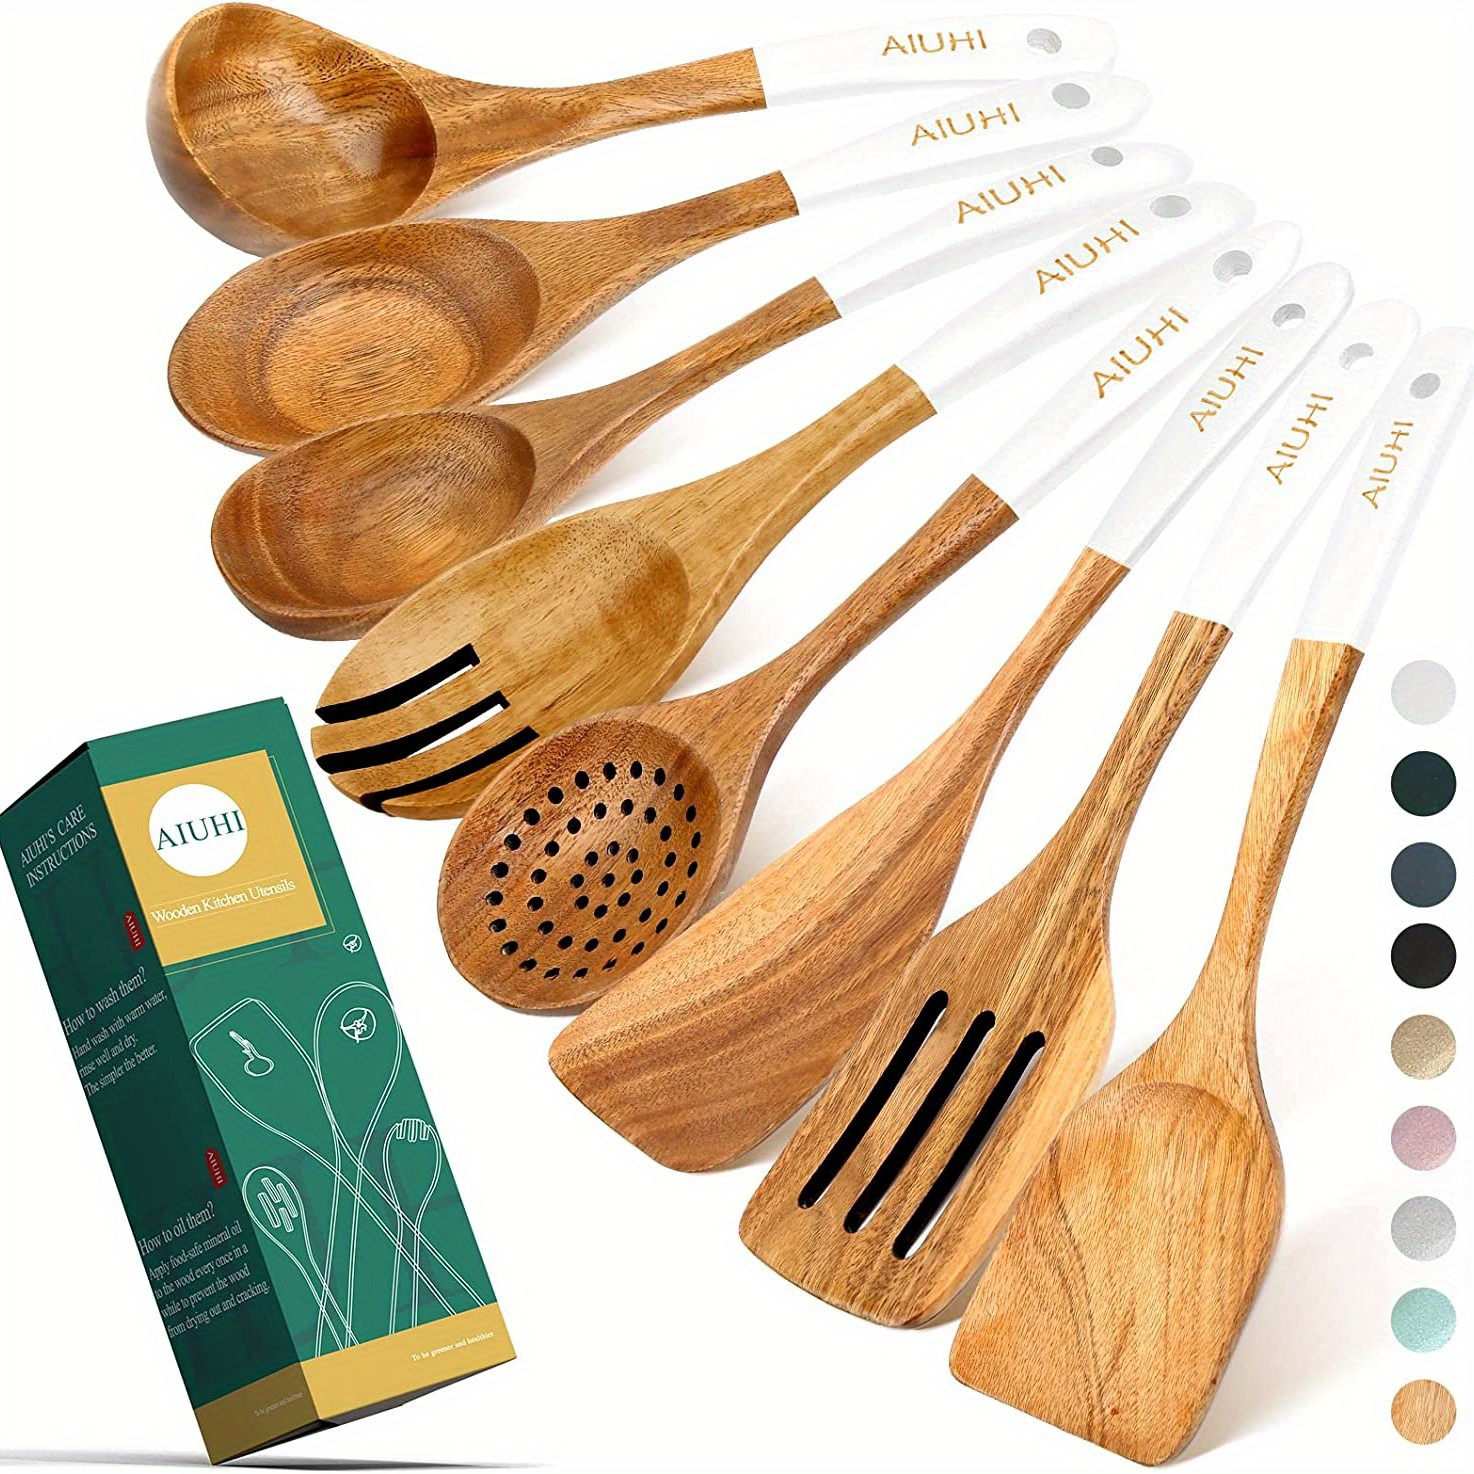  Cucharas de madera para cocinar, juego de utensilios